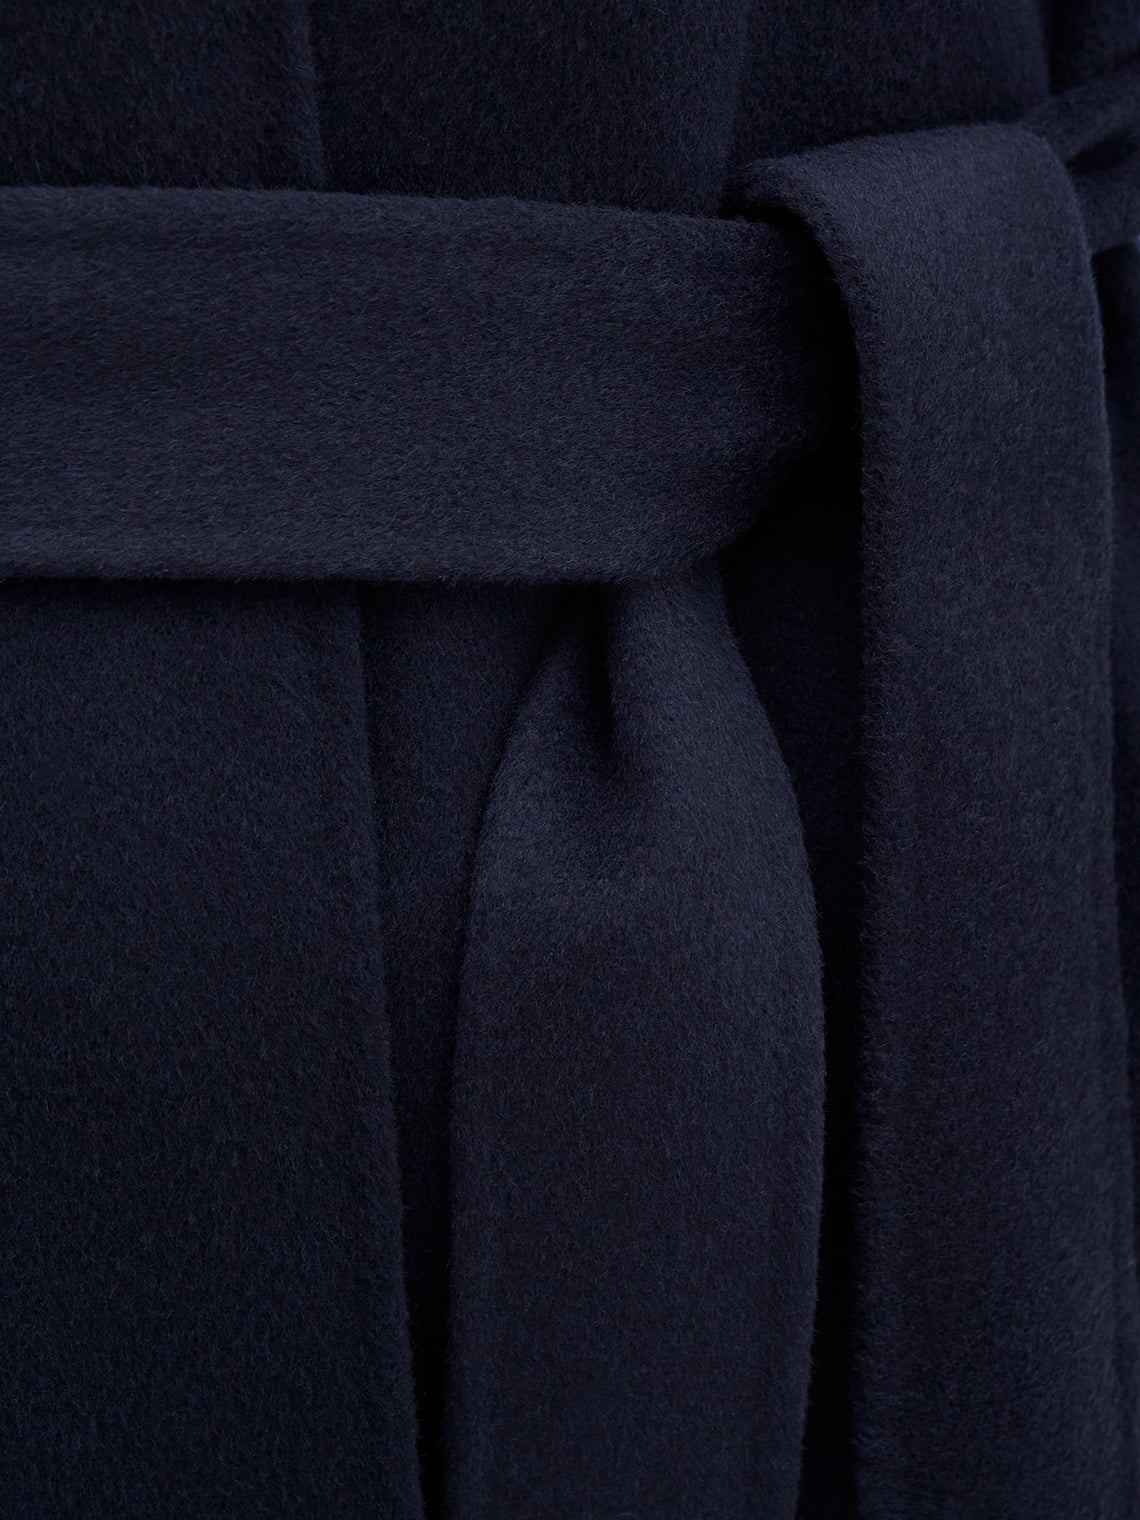 Alexa coat by Filippa K in dark blue